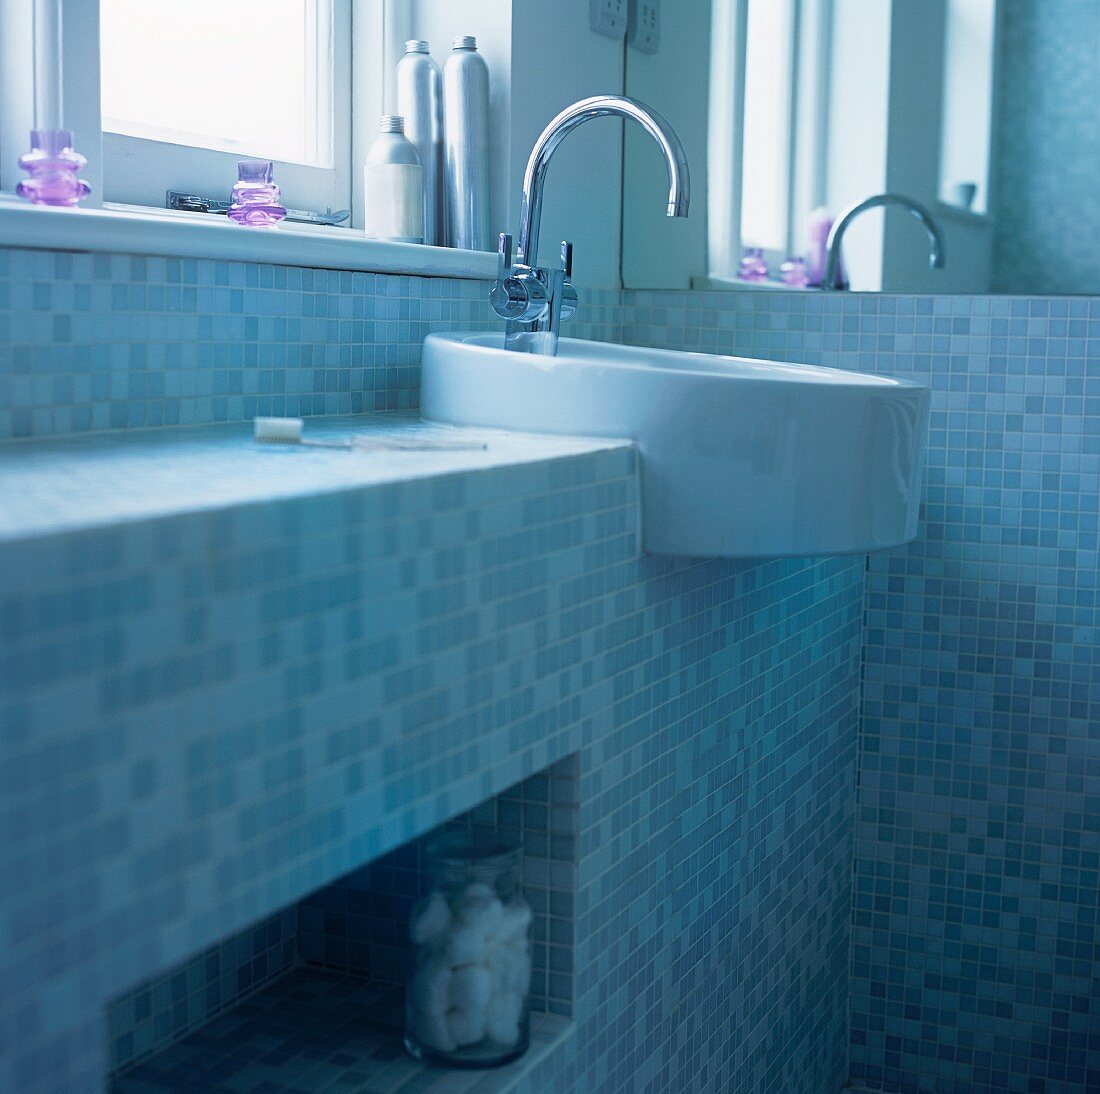 Waschbecken unter dem Fenster in einem Badezimmer mit Mosaikfliesen